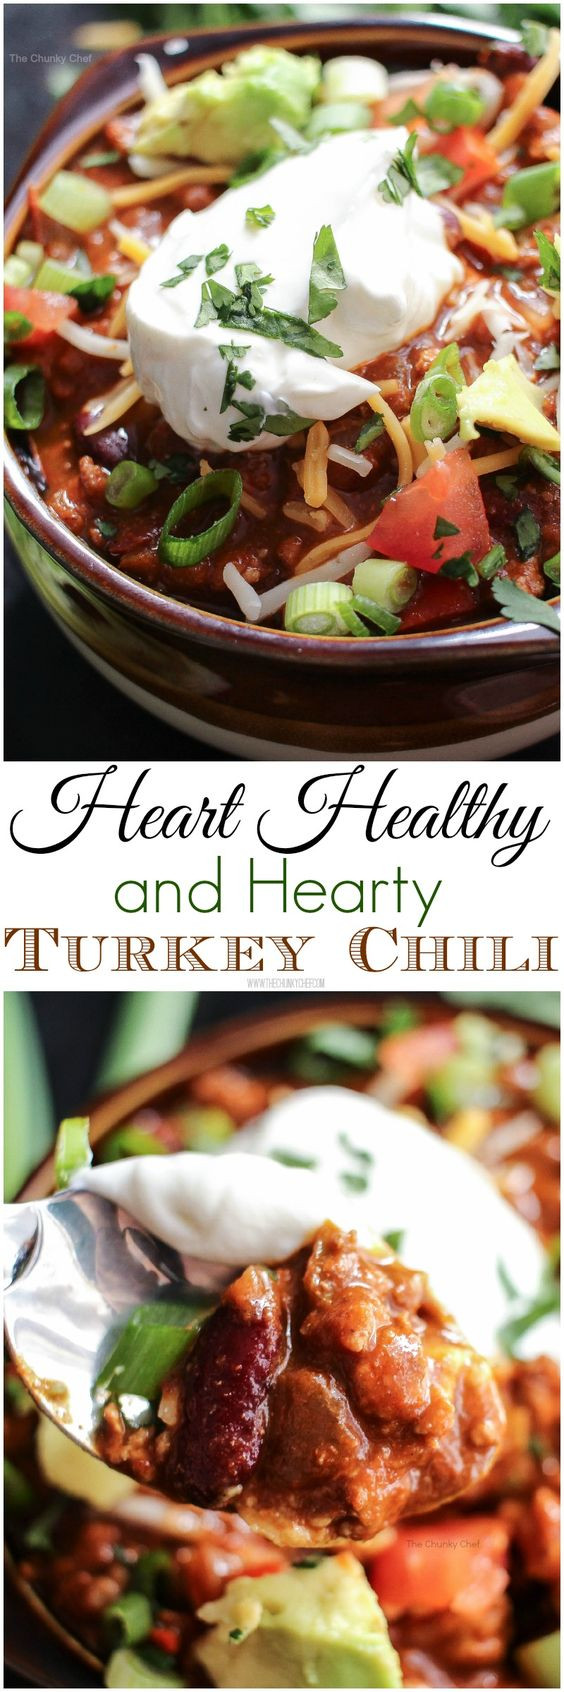 Heart Healthy Thanksgiving Recipes
 Heart Healthy Turkey Chili Recipe